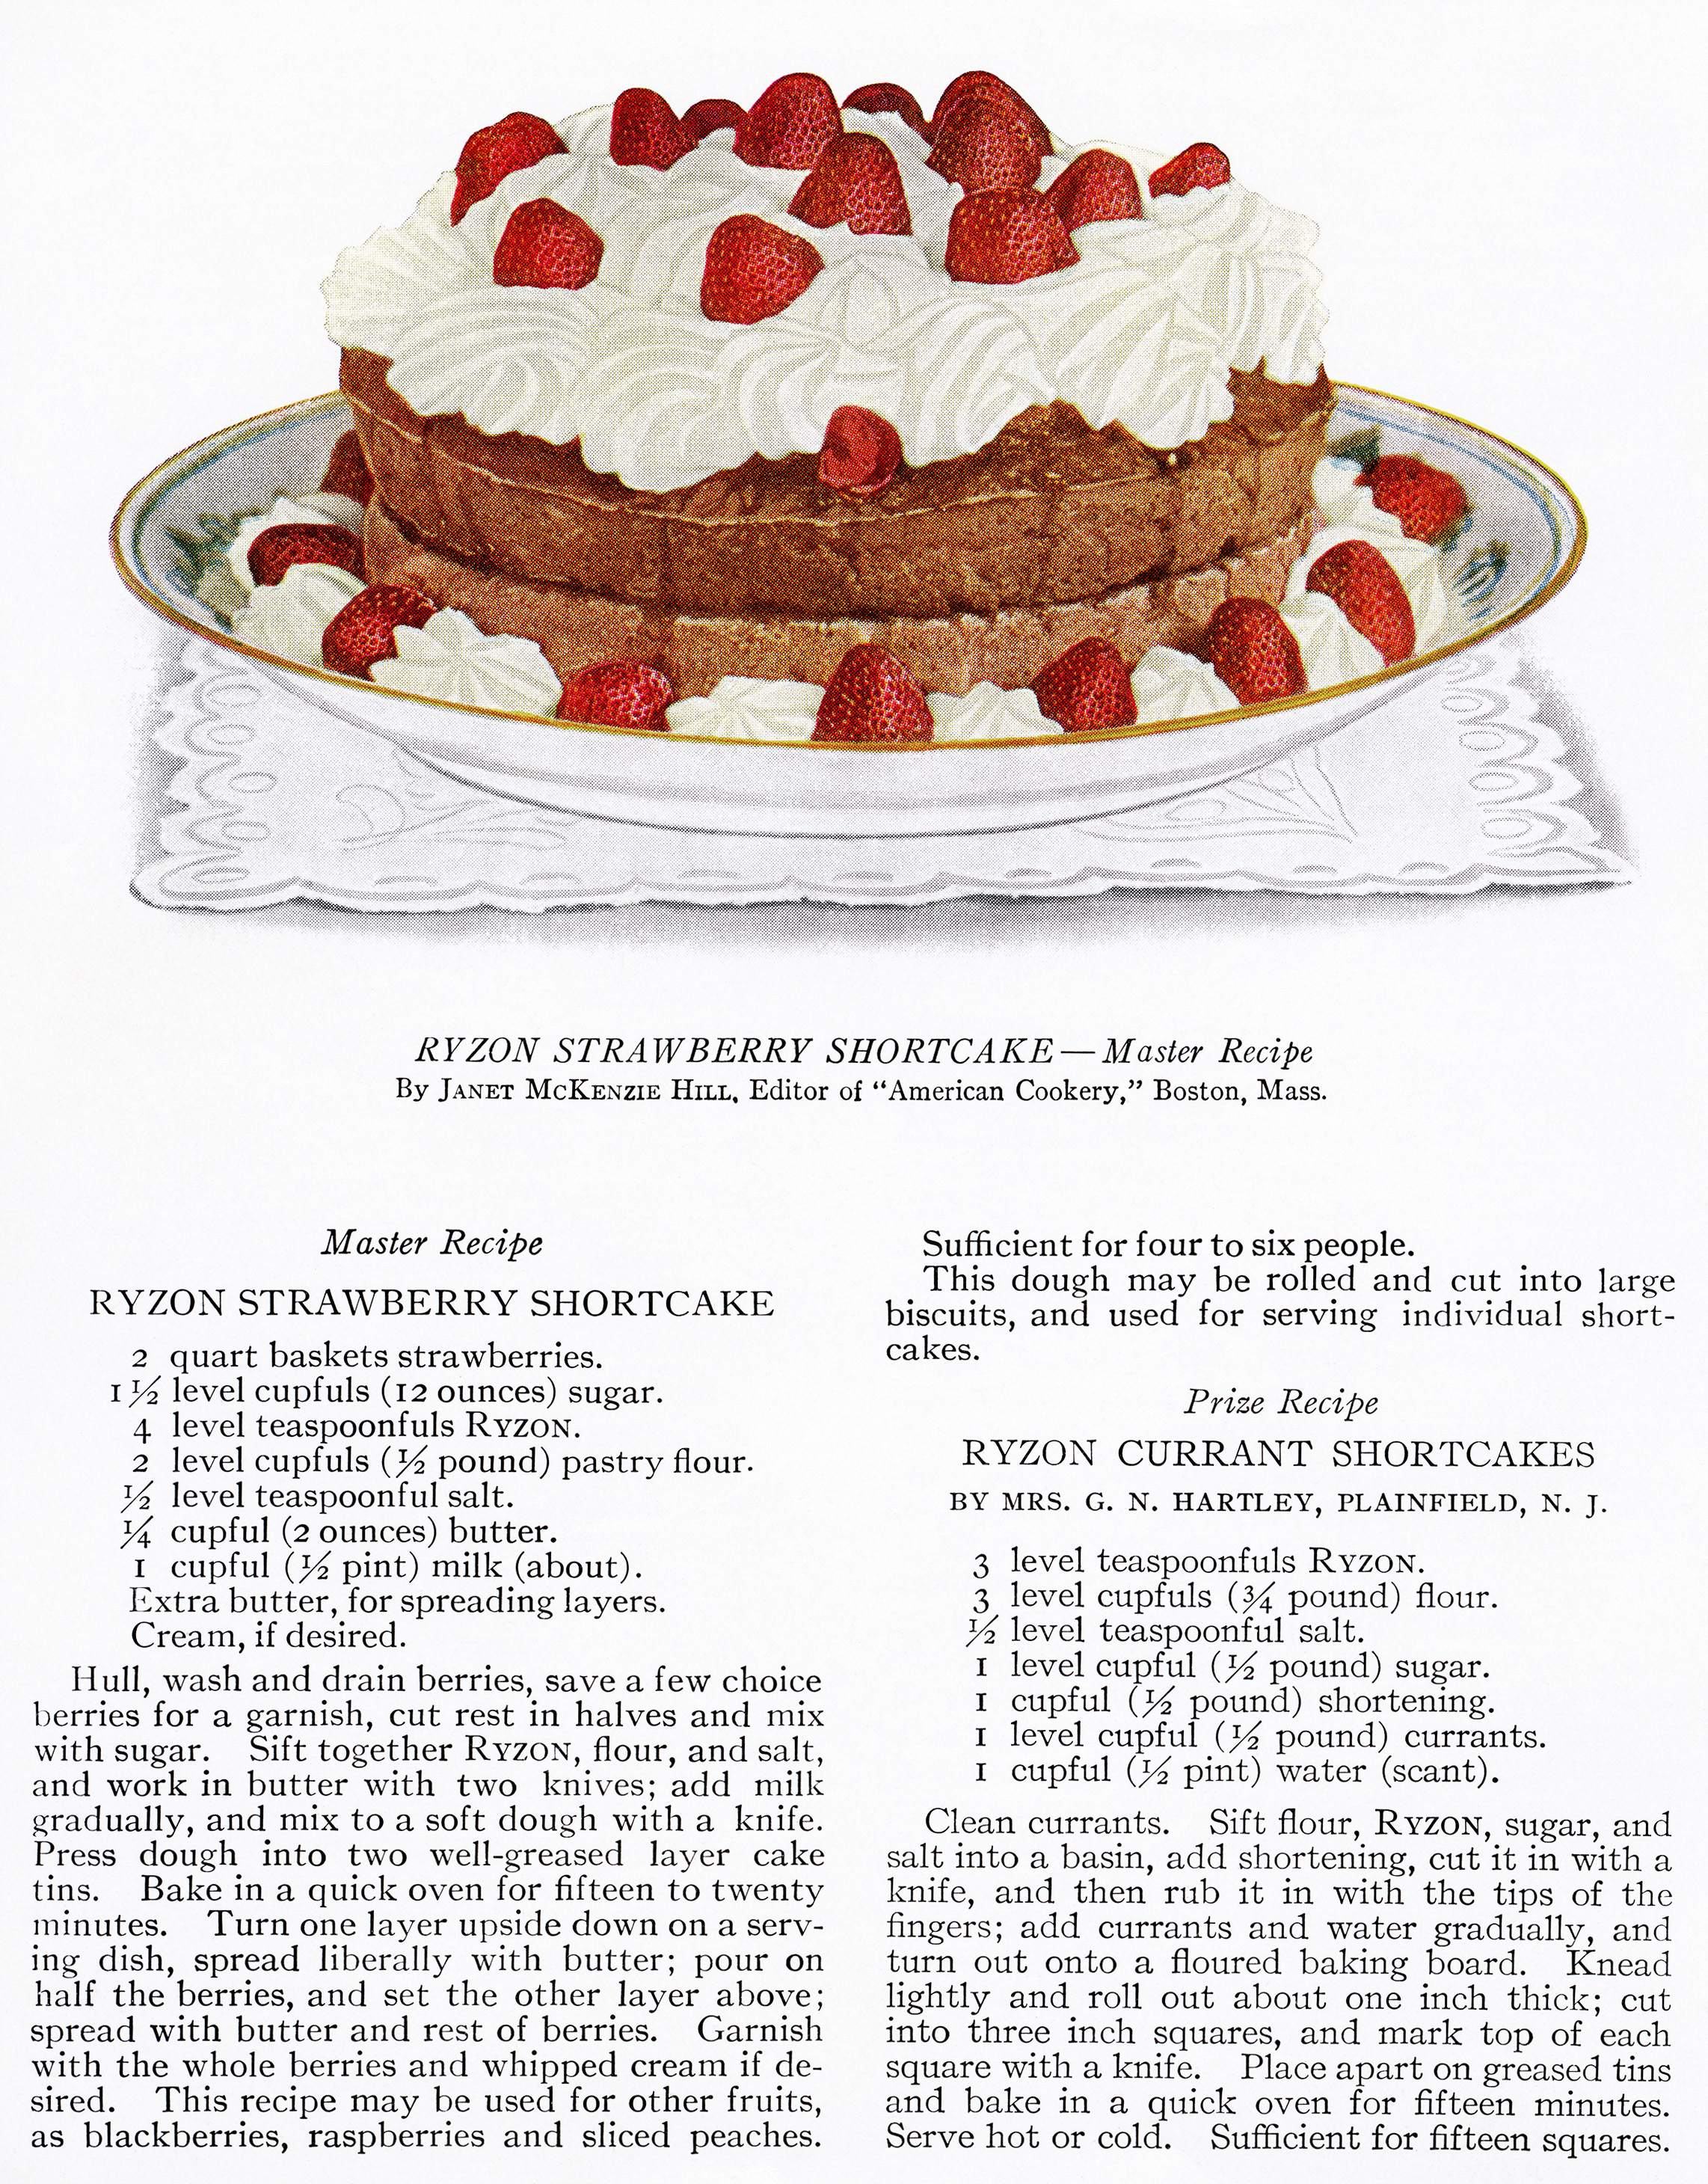 Strawberry Shortcake ~ Free Vintage Food Image - Old Design Shop Blog - Free Printable Dessert Recipes